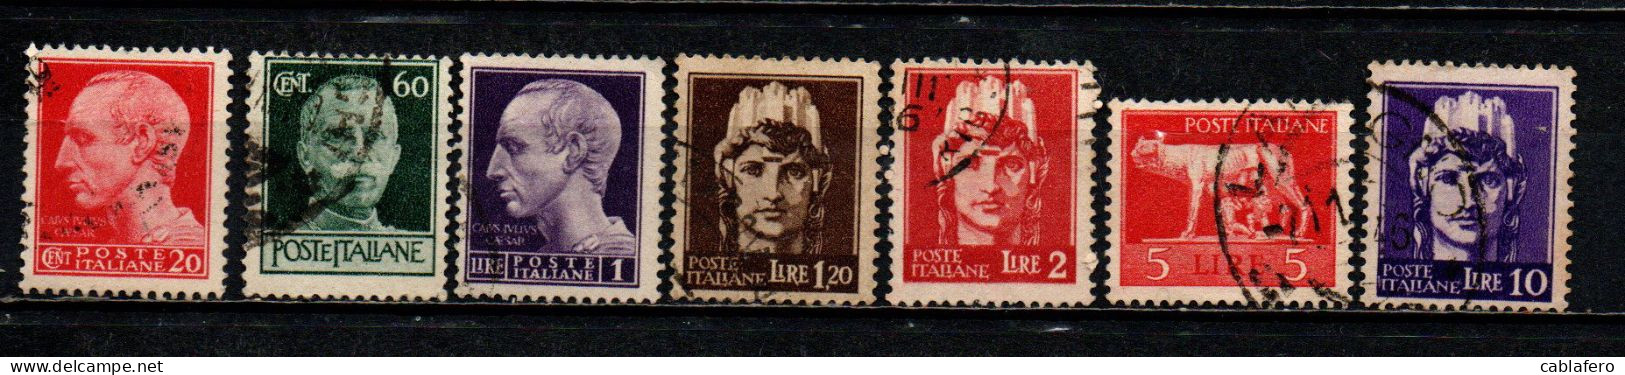 ITALIA LUOGOTENENZA - 1945 - SERIE IMPERIALE SENZA FASCIO - FIL. RUOTA - USATI - Afgestempeld